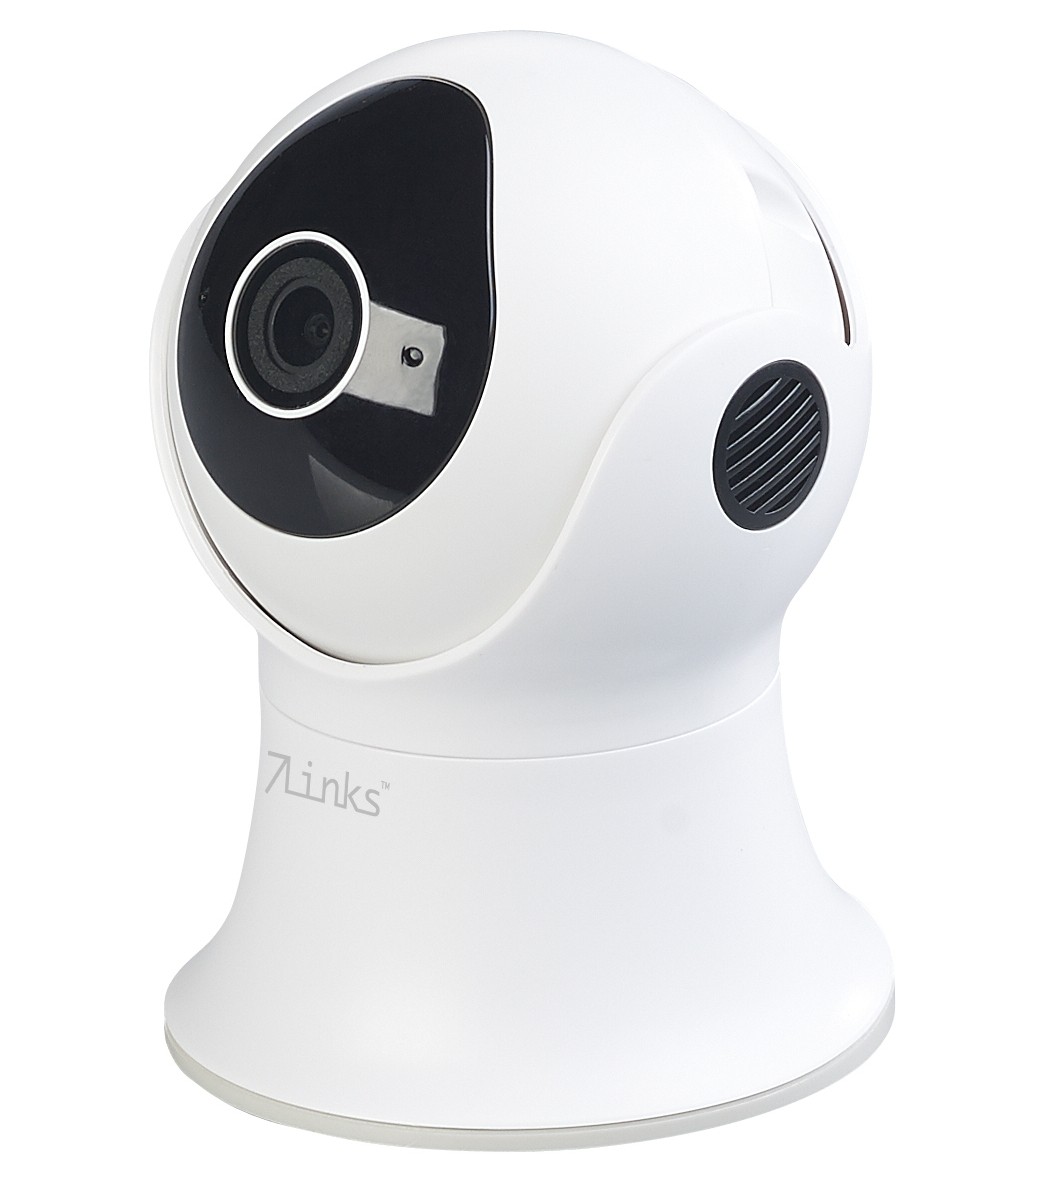 Smart Home Alexa-kompatible Überwachungskamera von 7links - Weltweiter Zugriff auch per App - News, Bild 1